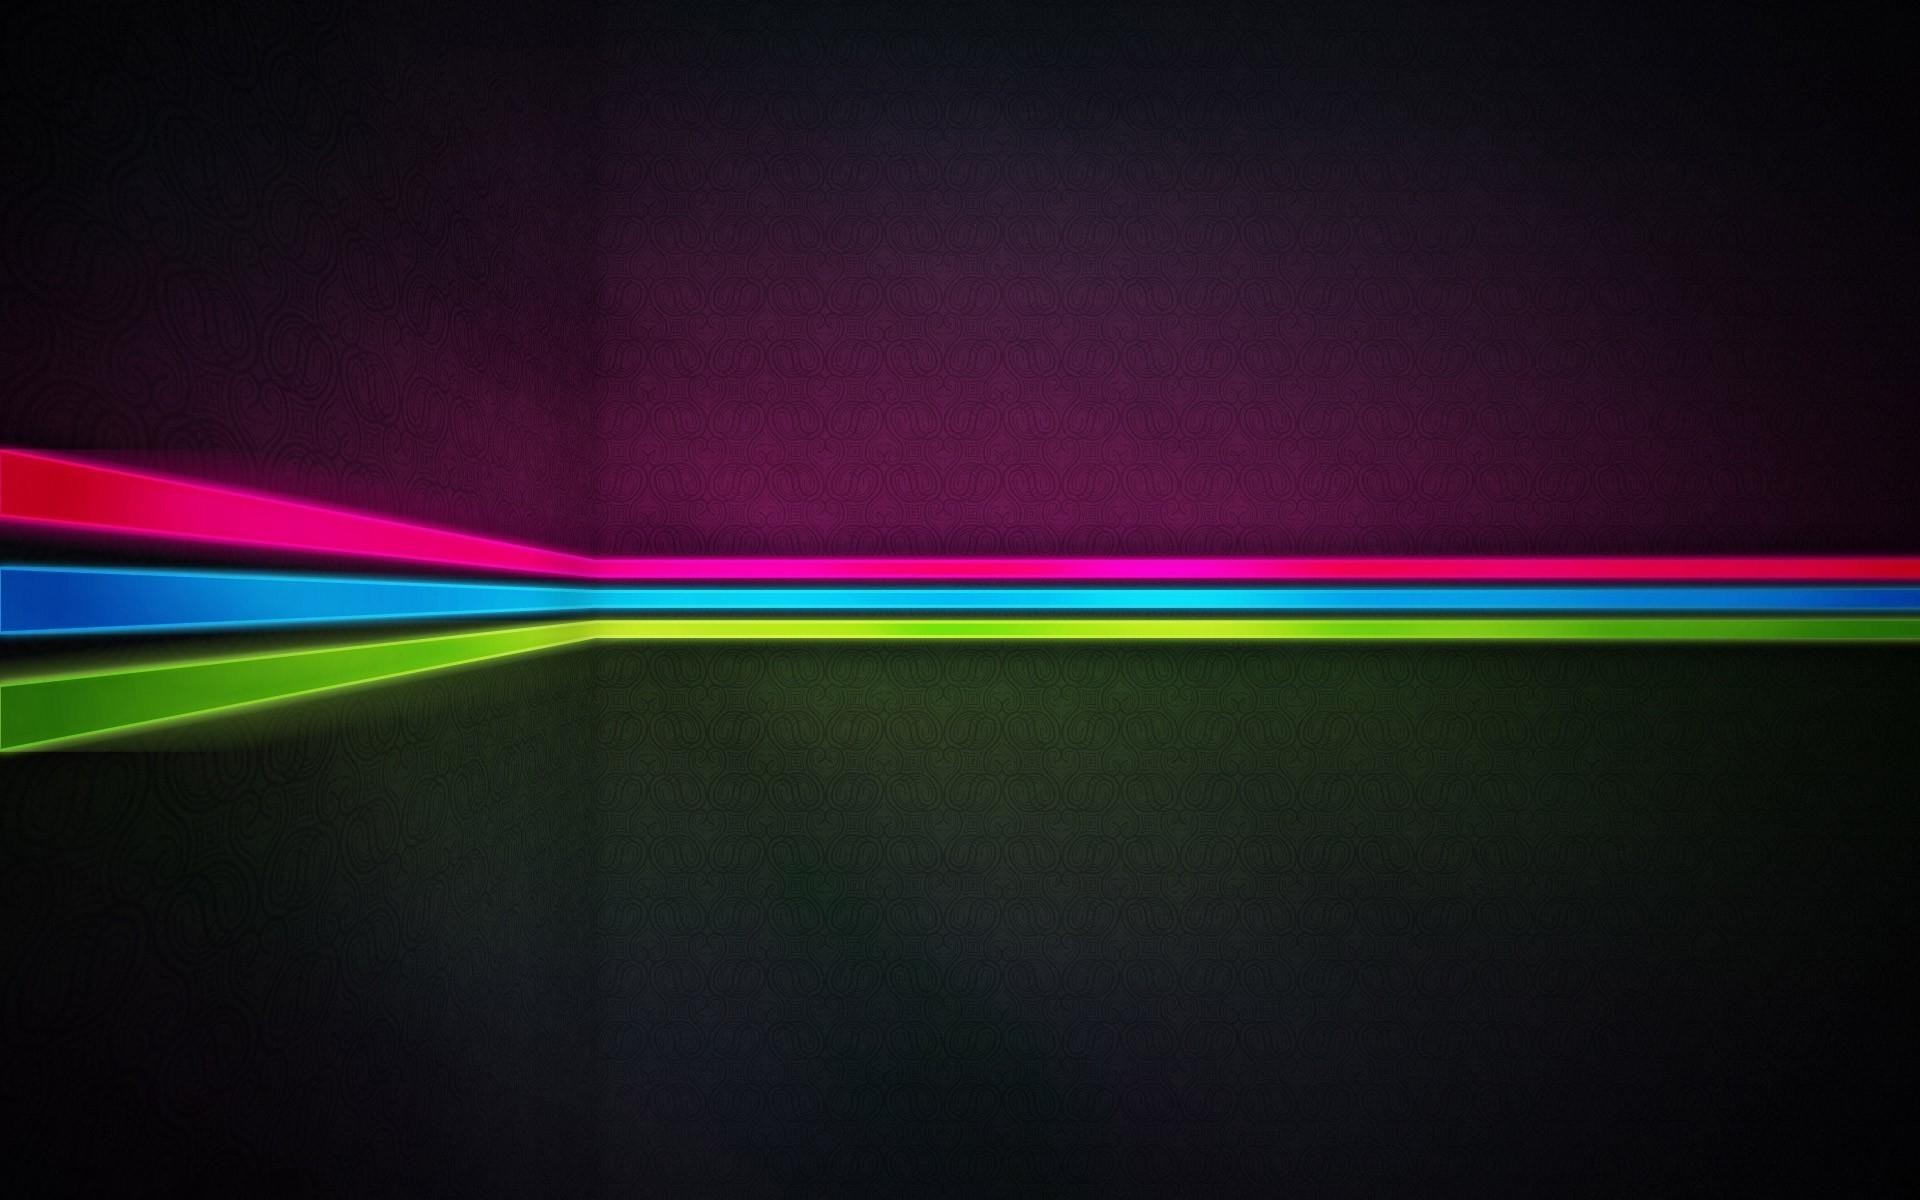 Neon Backgrounds free download | PixelsTalk.Net